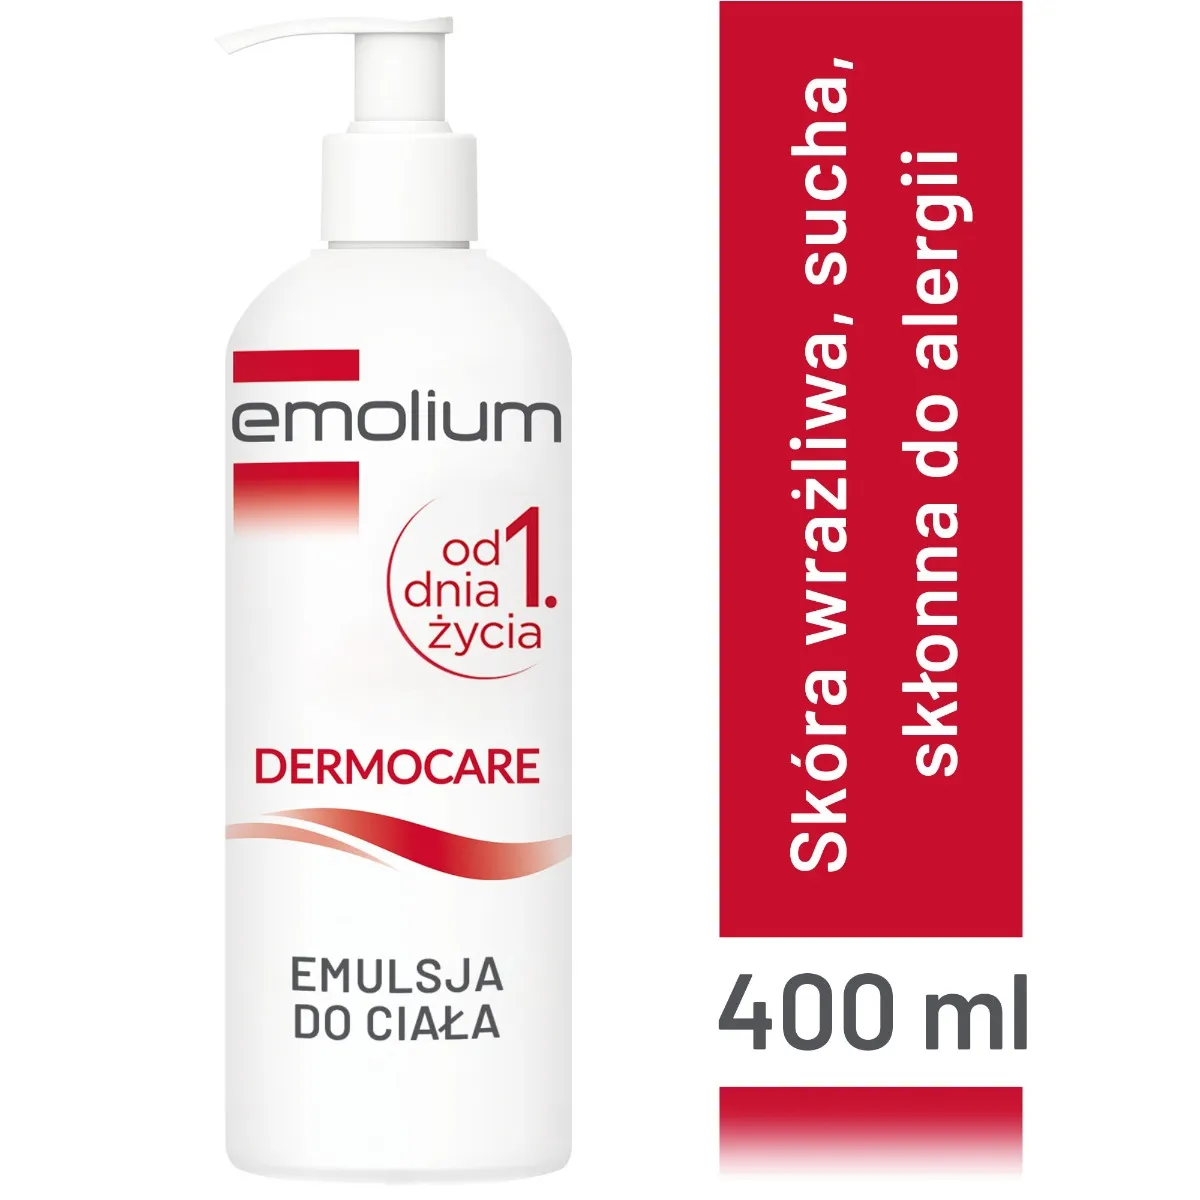 Emolium Dermocare, emulsja do ciała, 400 ml